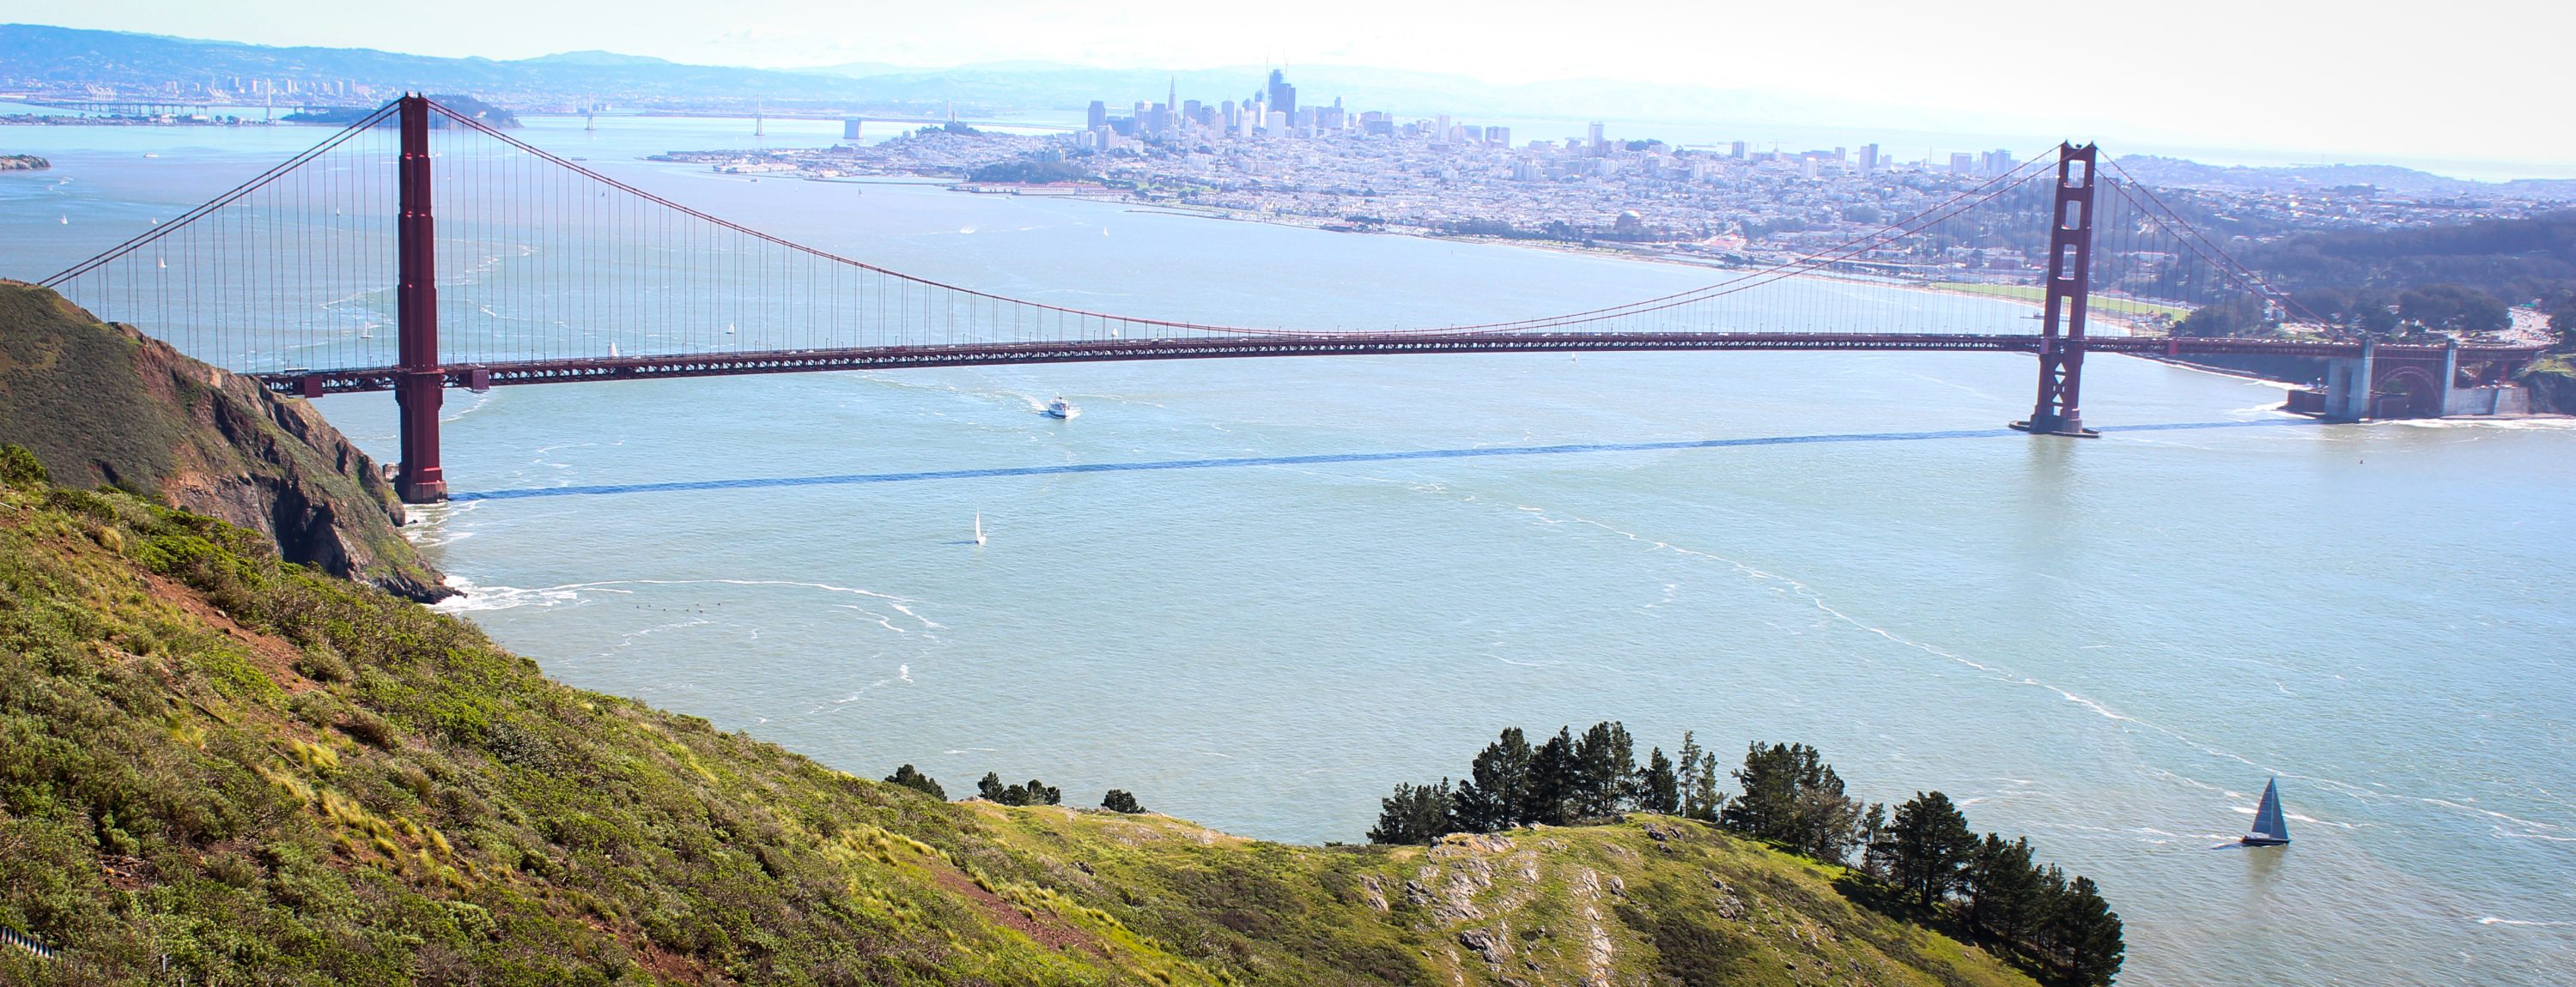 Golden Gate bridge as seen from Hawk Hill